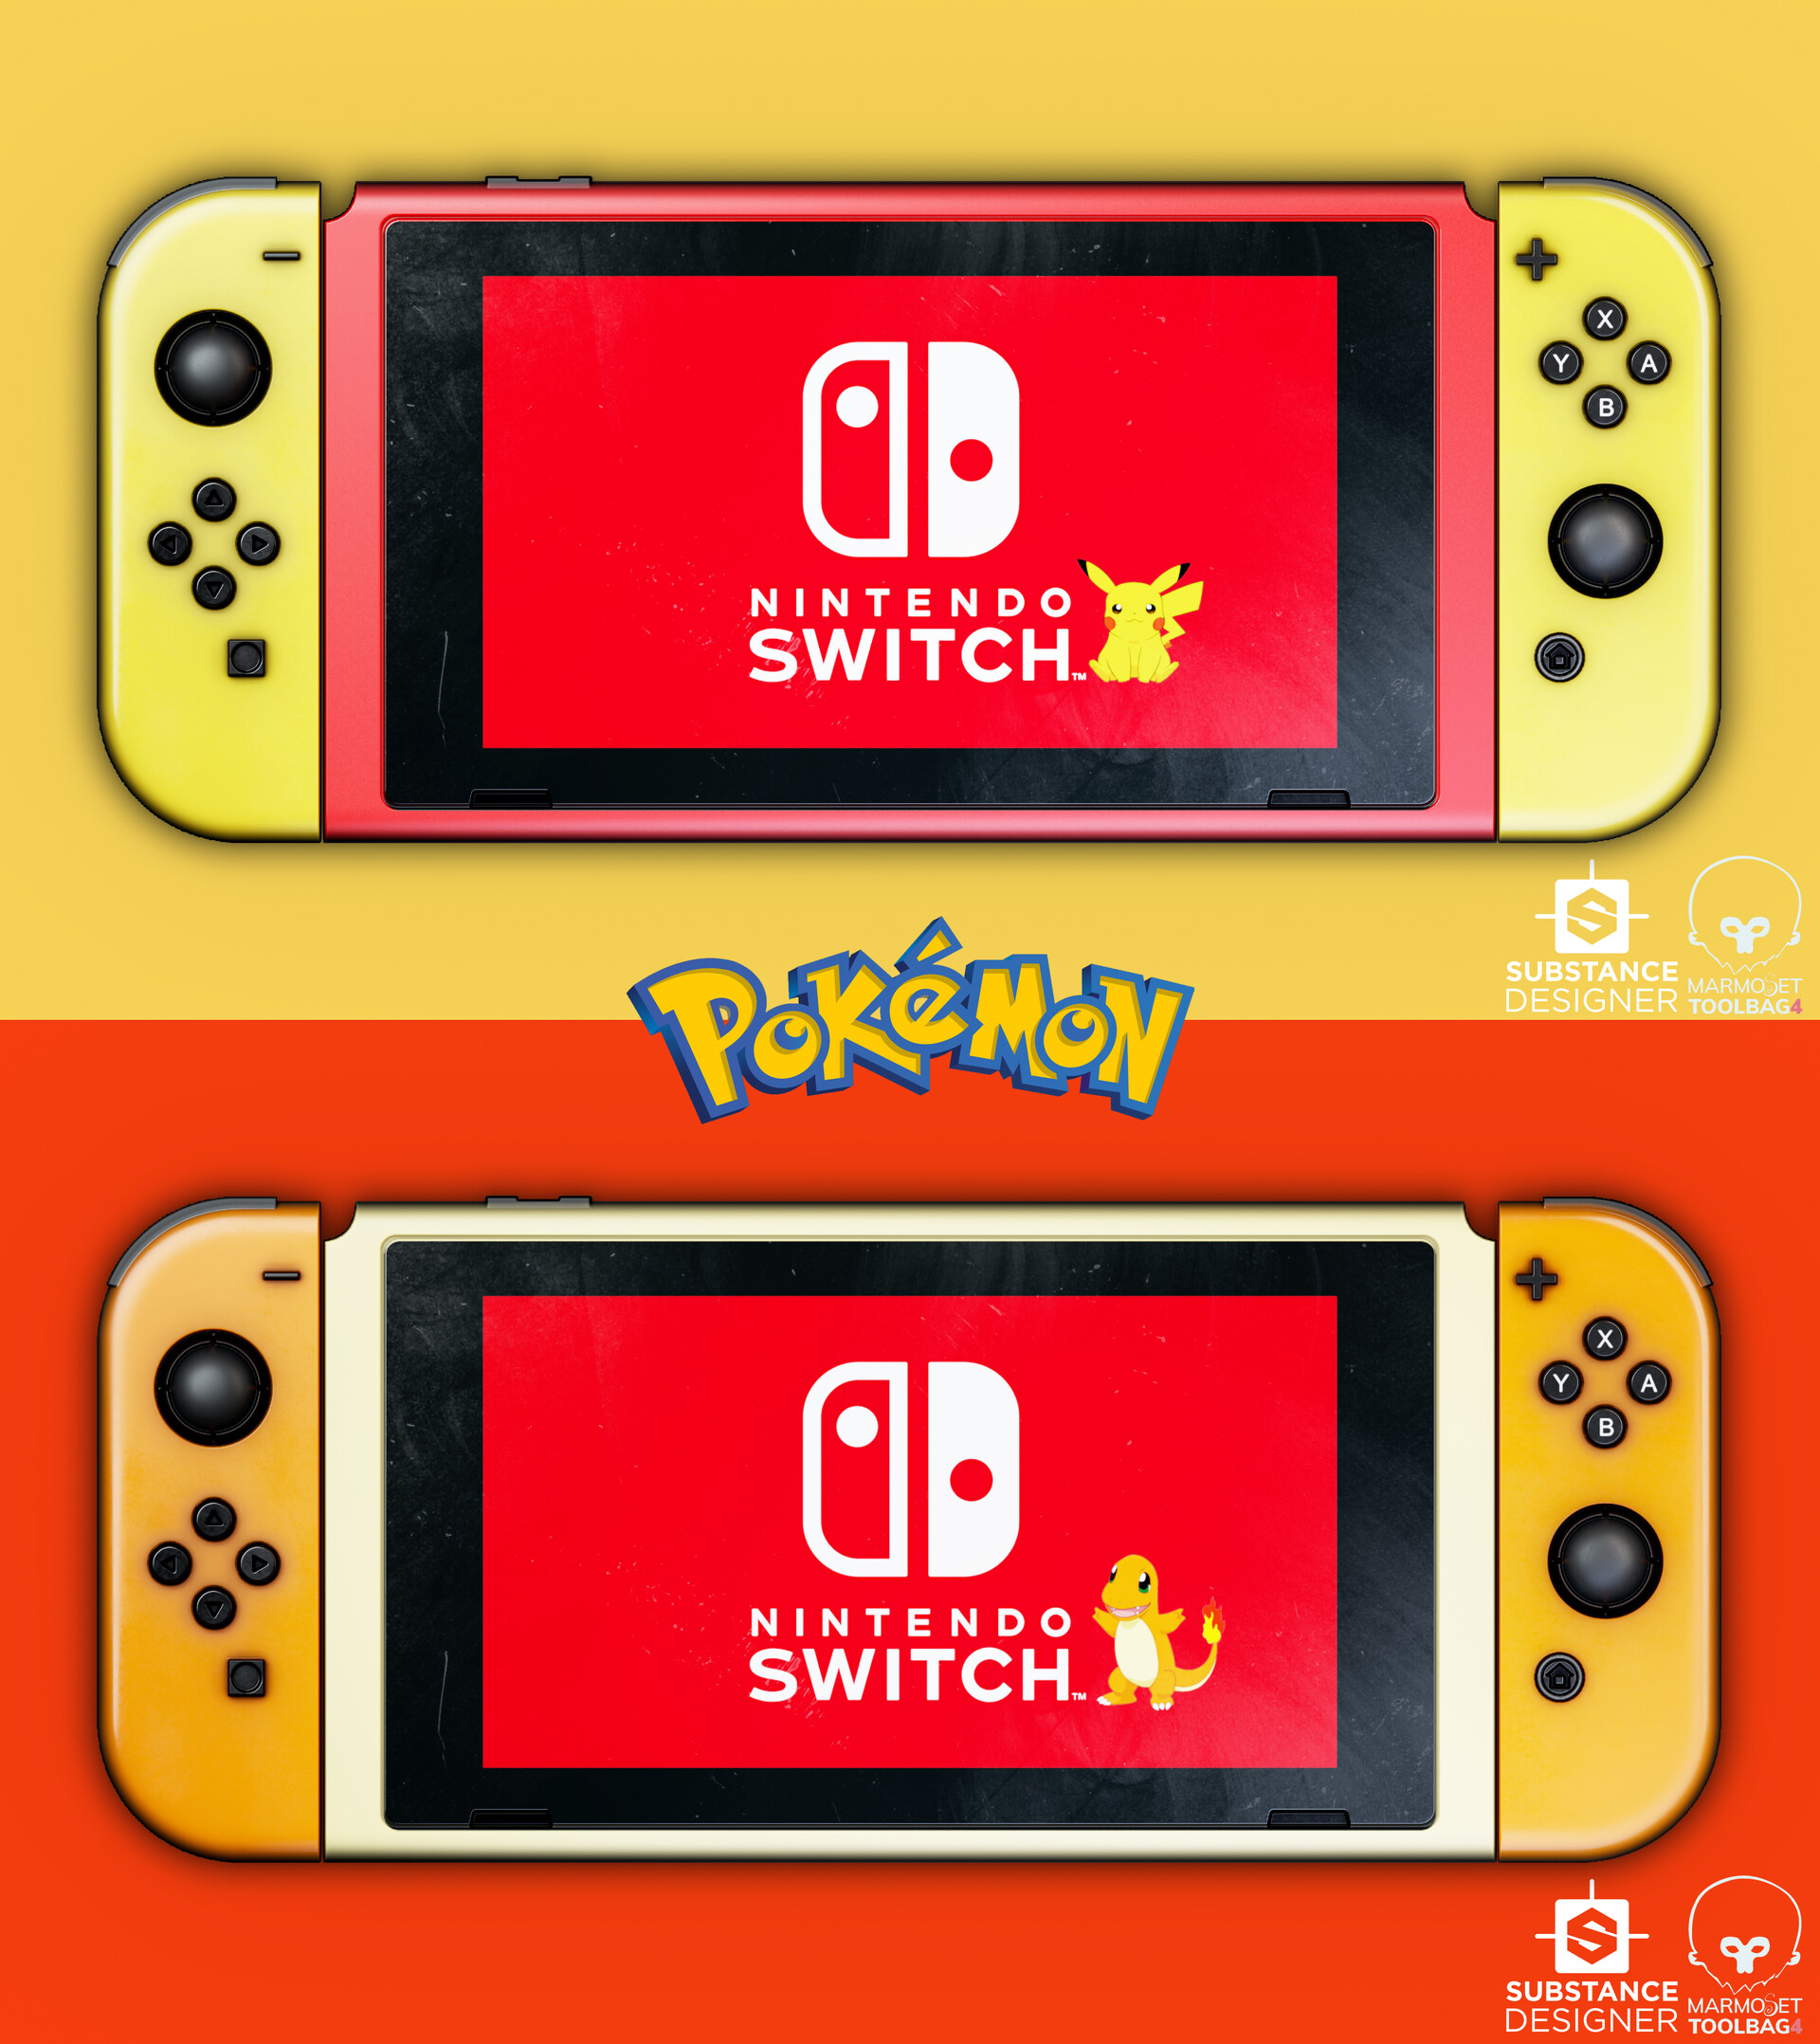 Les fans réagissent avec humour au nouveau Pokémon Zarude - Nintendo Switch  - Nintendo-Master